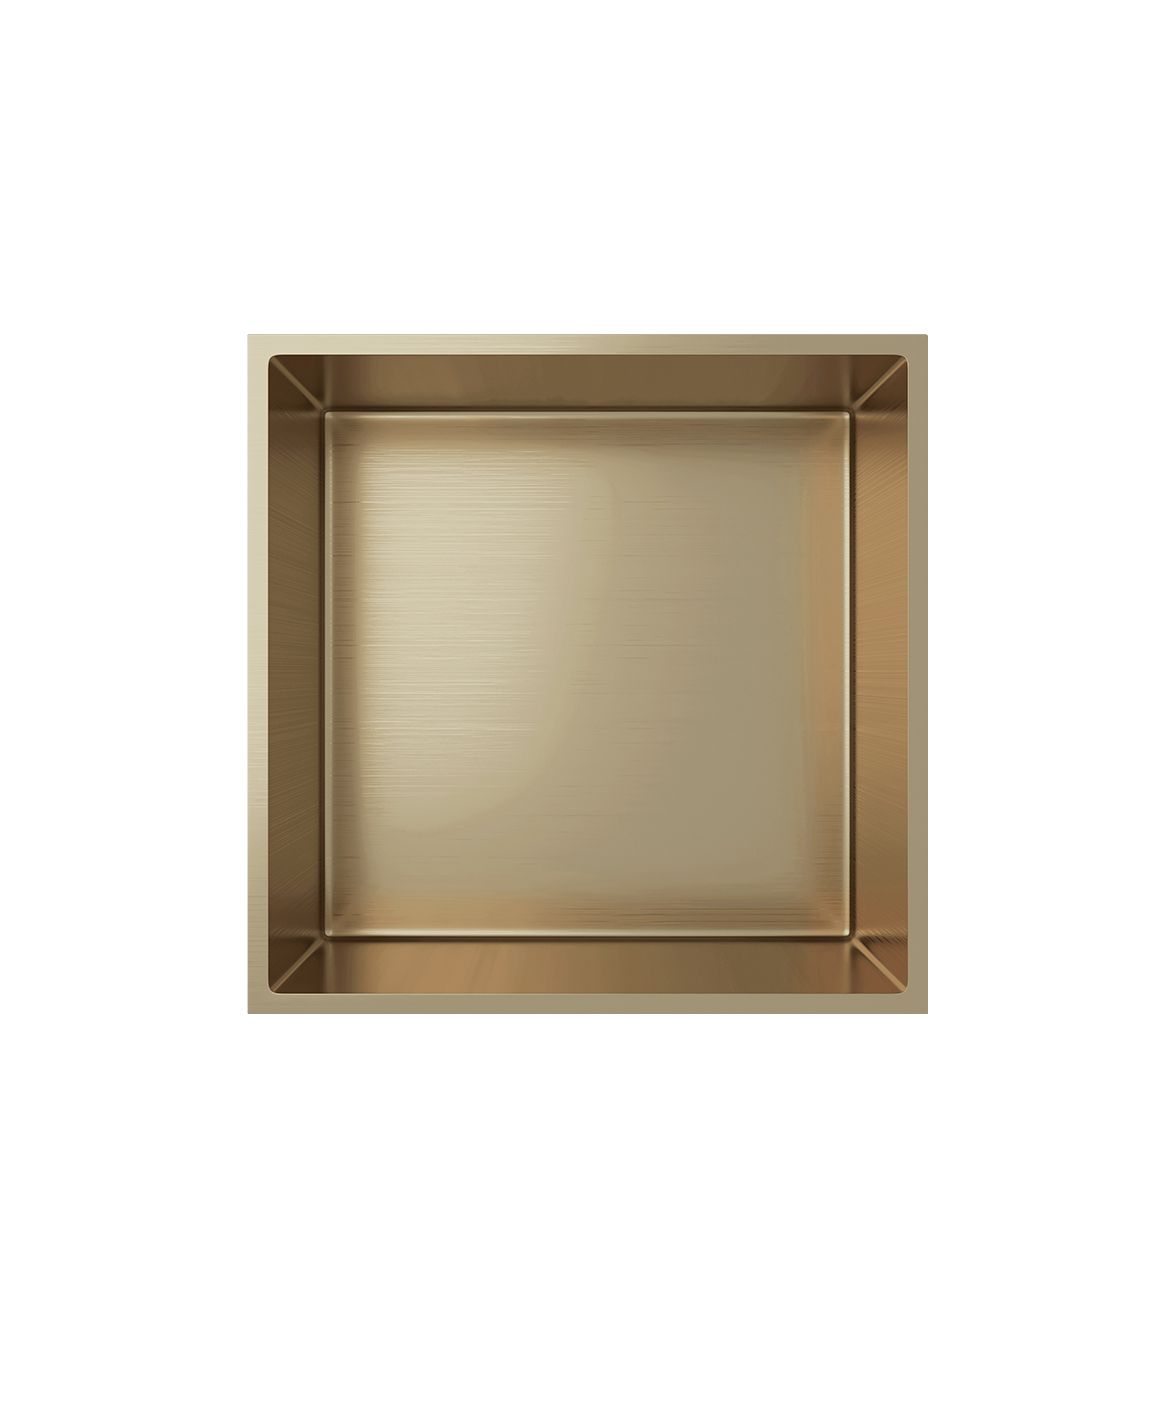 Wandnische Edelstahl gold gebürstet rostfrei 305x305x100mm - Gold - Aloni